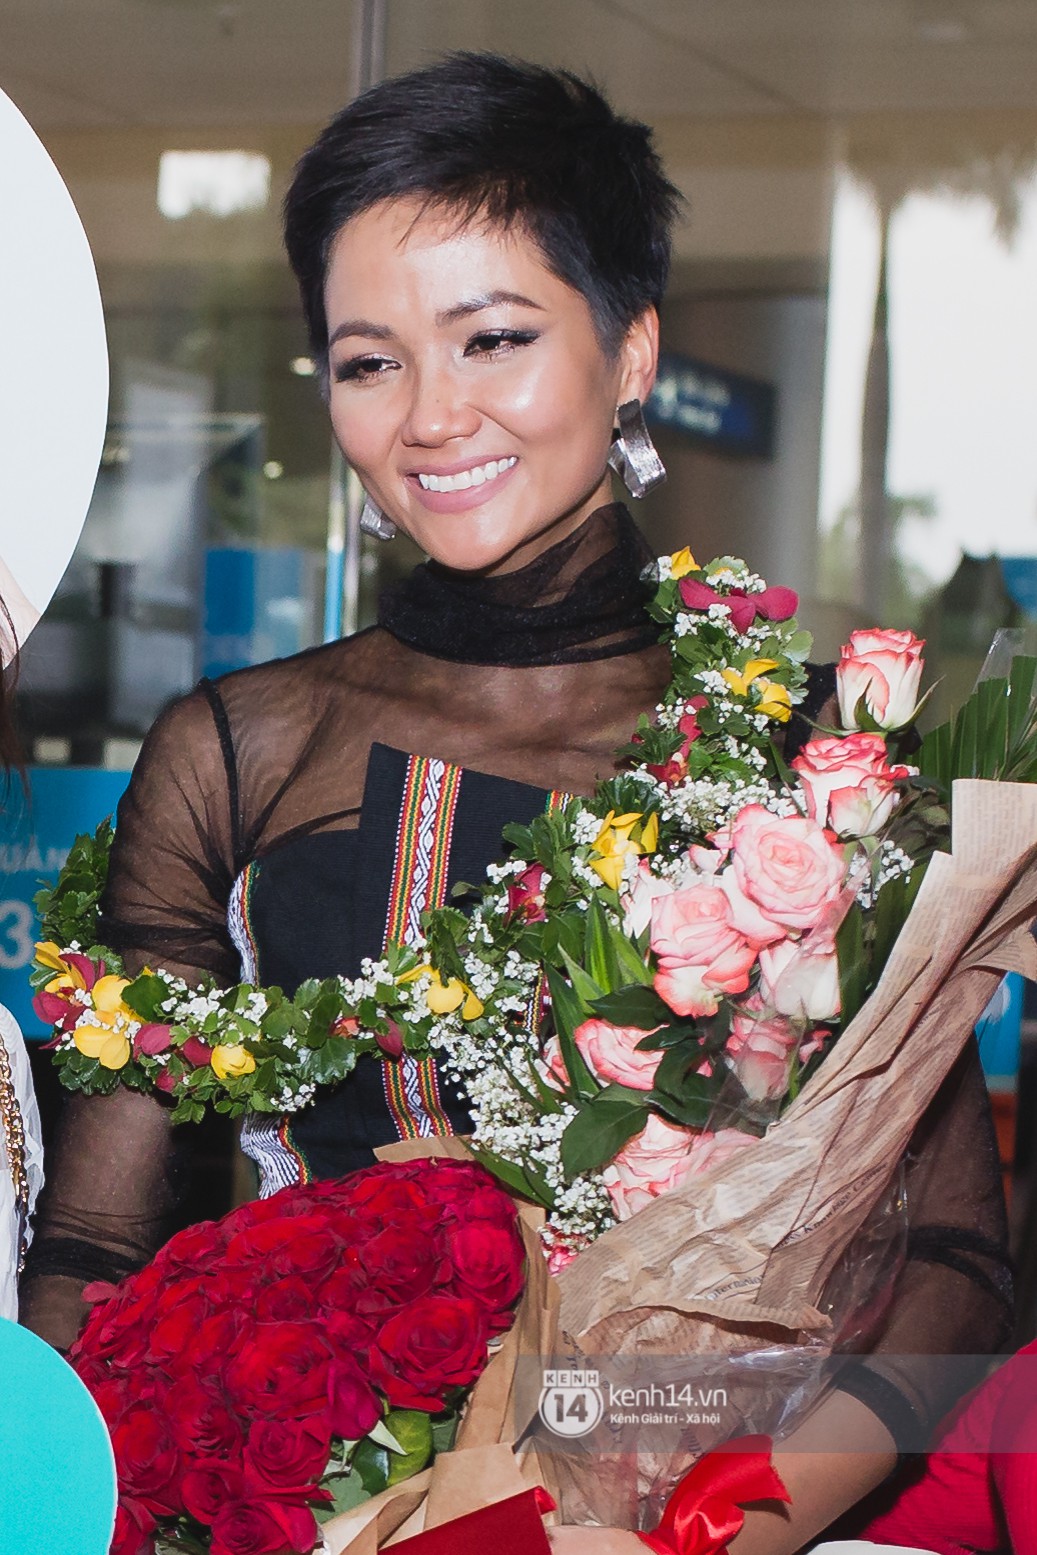 Kiêu hãnh trên đất khách, HHen Niê bật khóc tại sân bay Việt Nam sau thành tích lịch sử Top 5 Miss Universe 2018 - Ảnh 2.